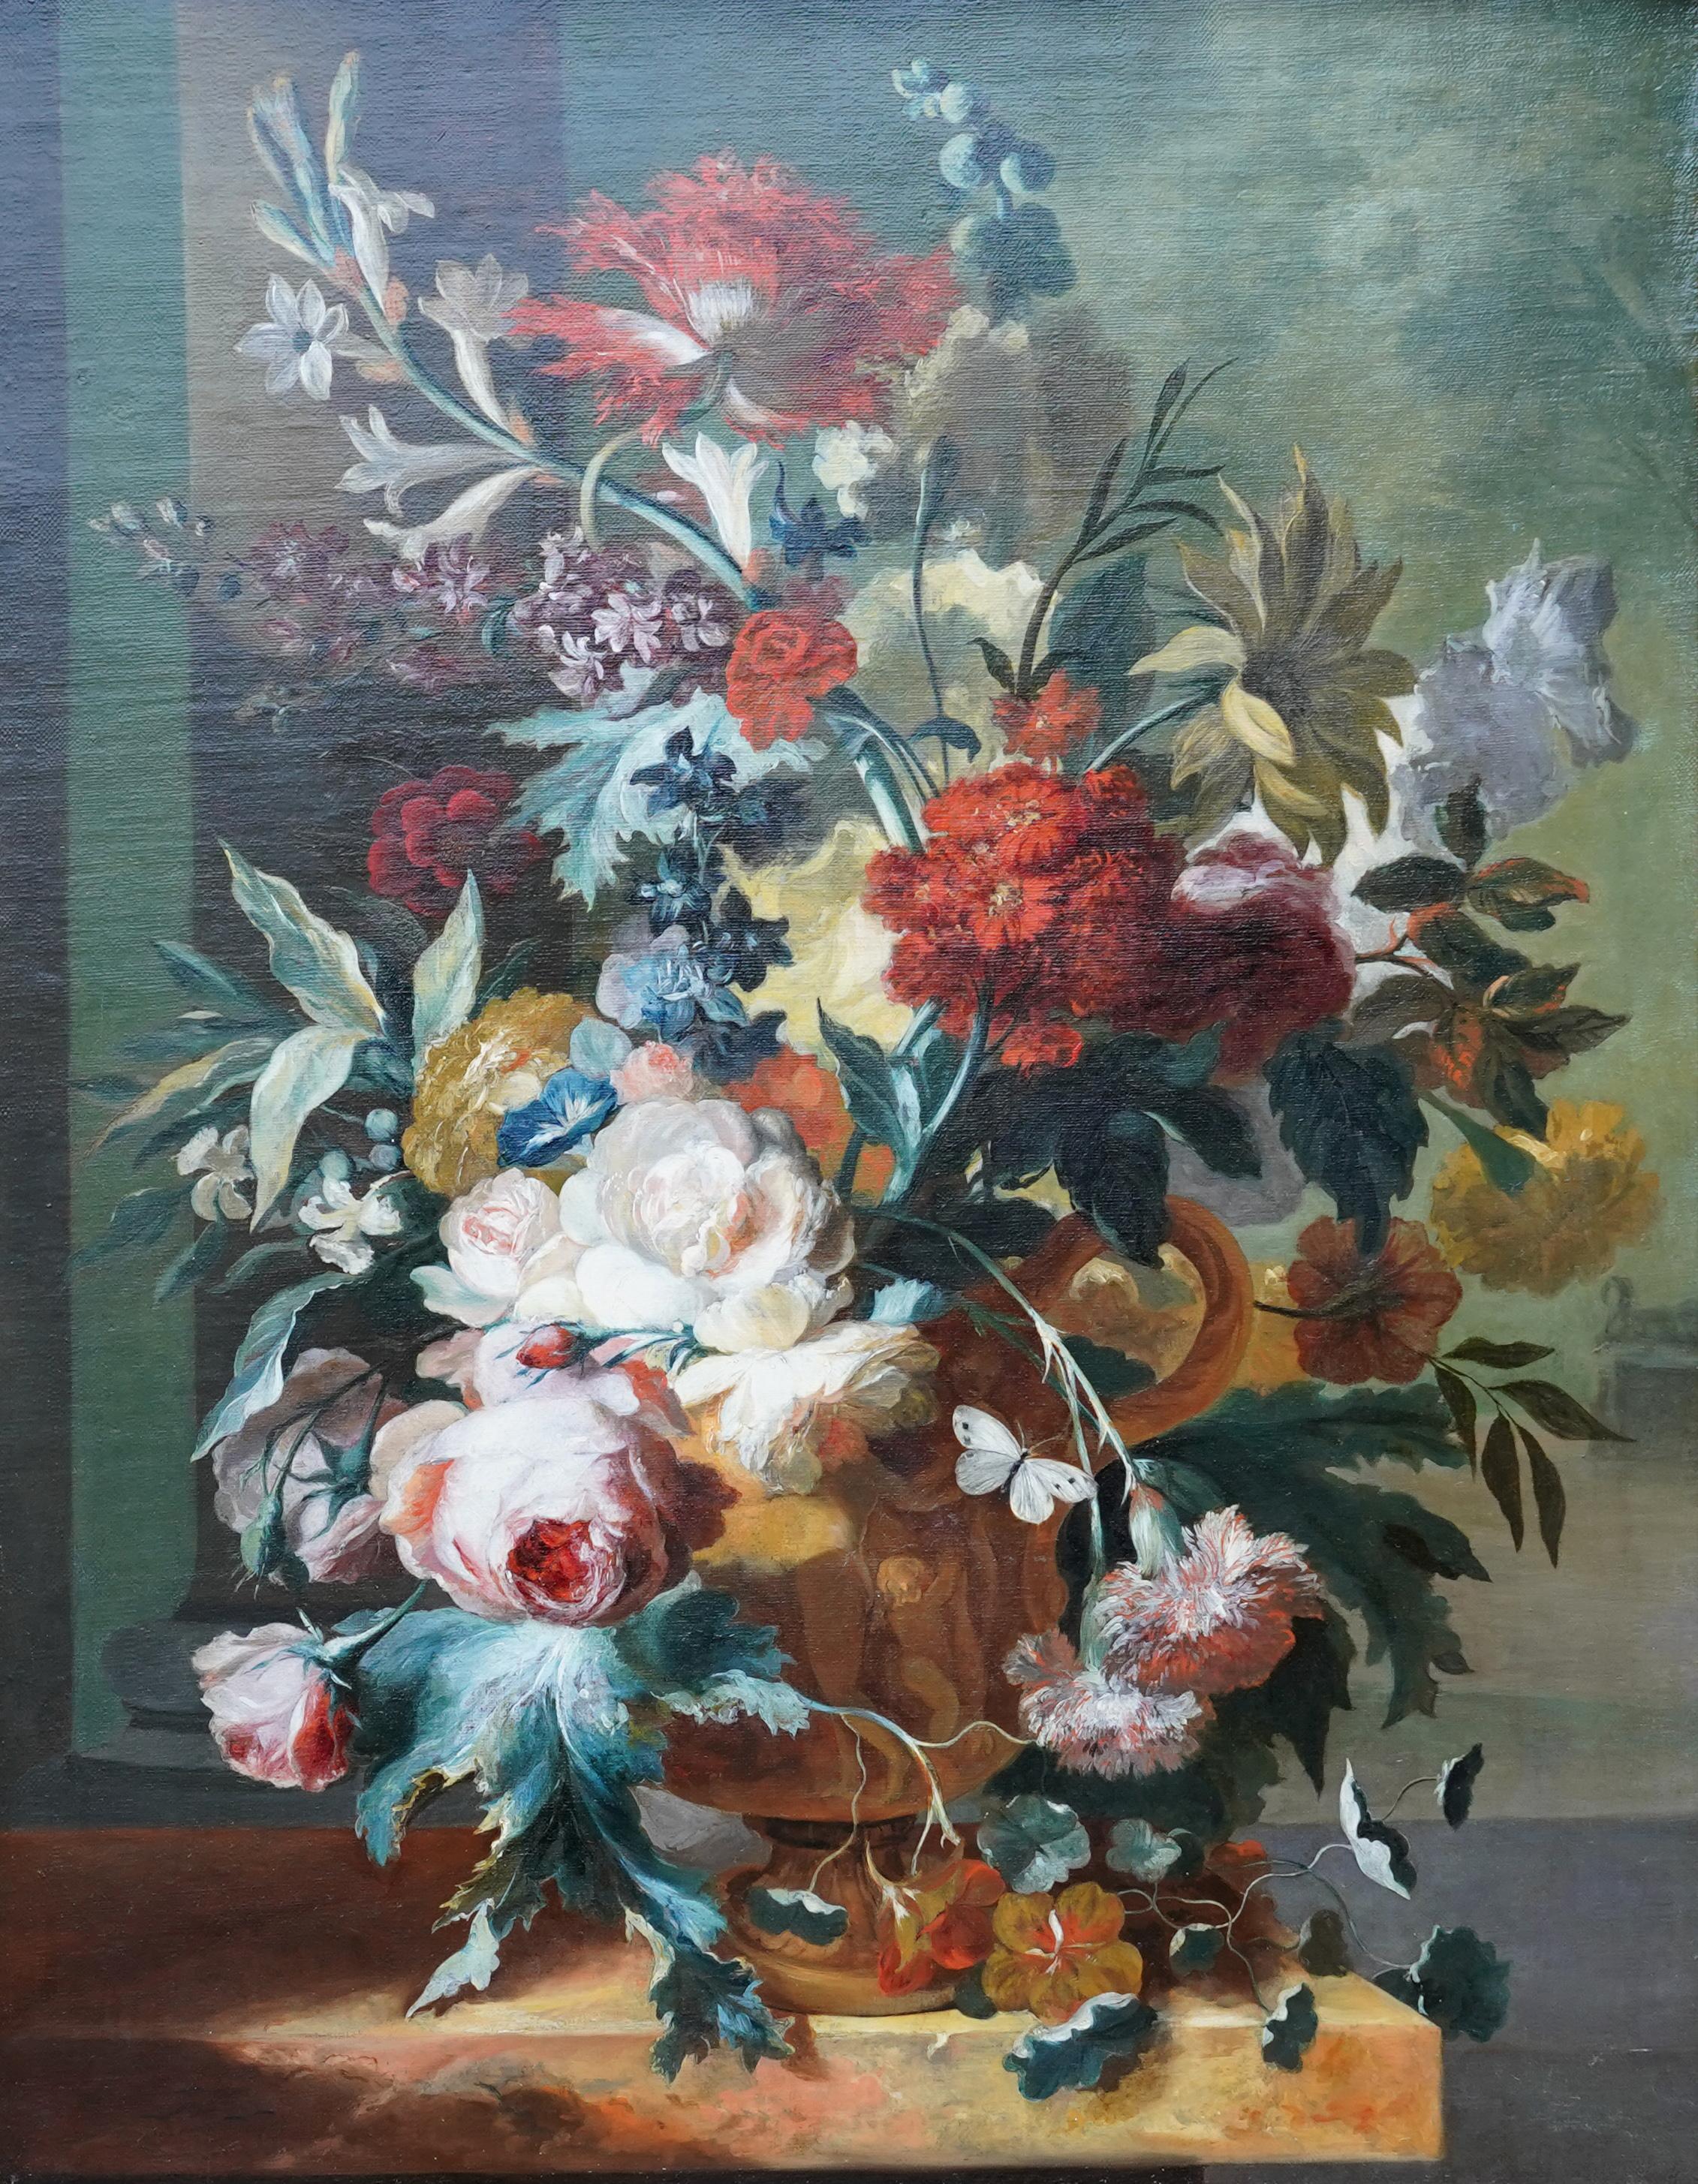 Fleurs dans un vase sur ledge - Peinture à l'huile de nature florale de maître néerlandais du 18ème siècle - Painting de Margaretha Haverman